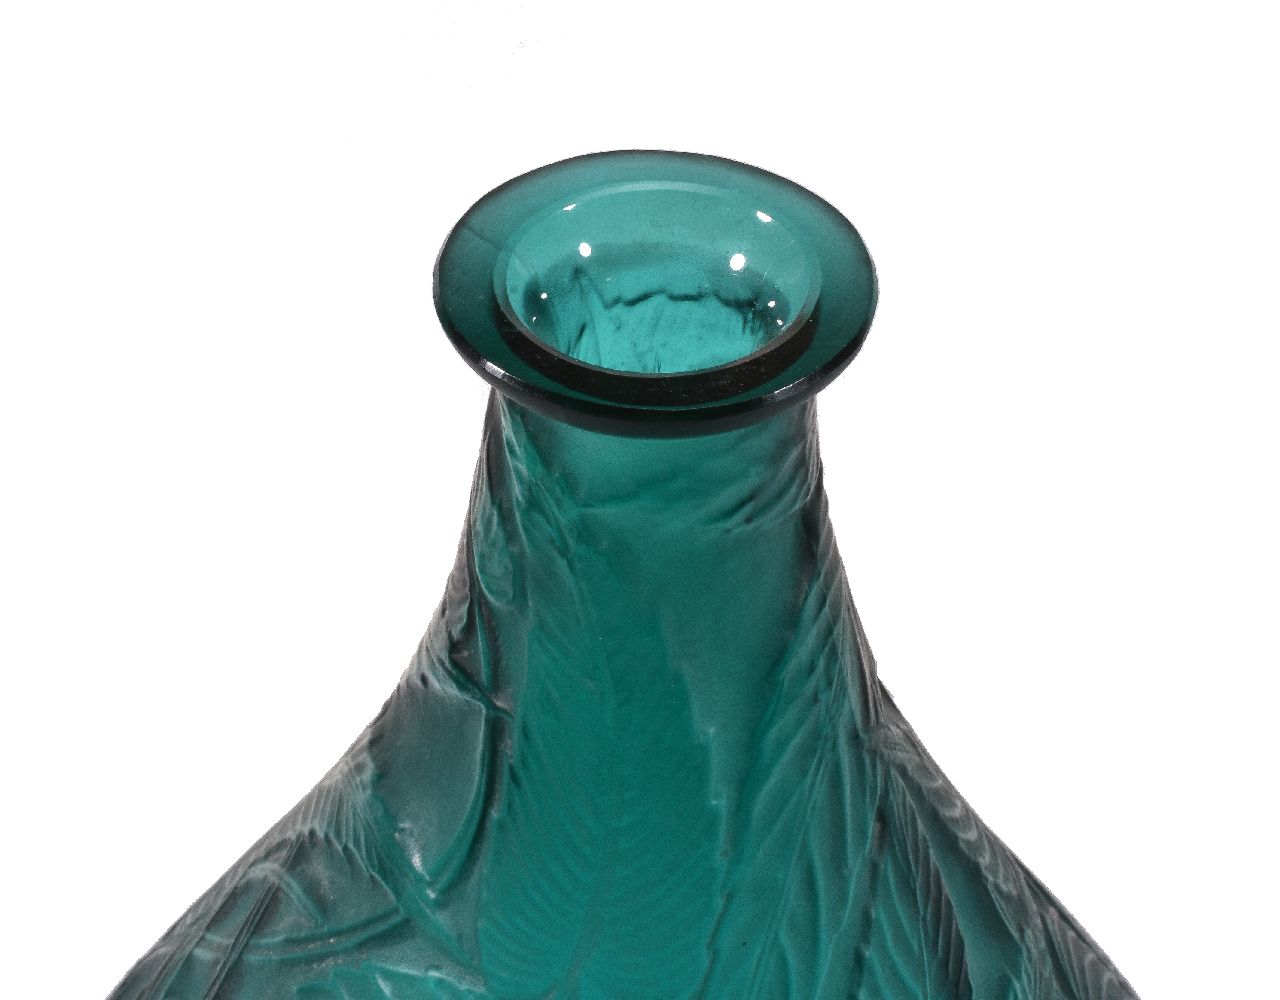 Lalique, René Lalique, Sauge, a green glass vase - Image 2 of 3